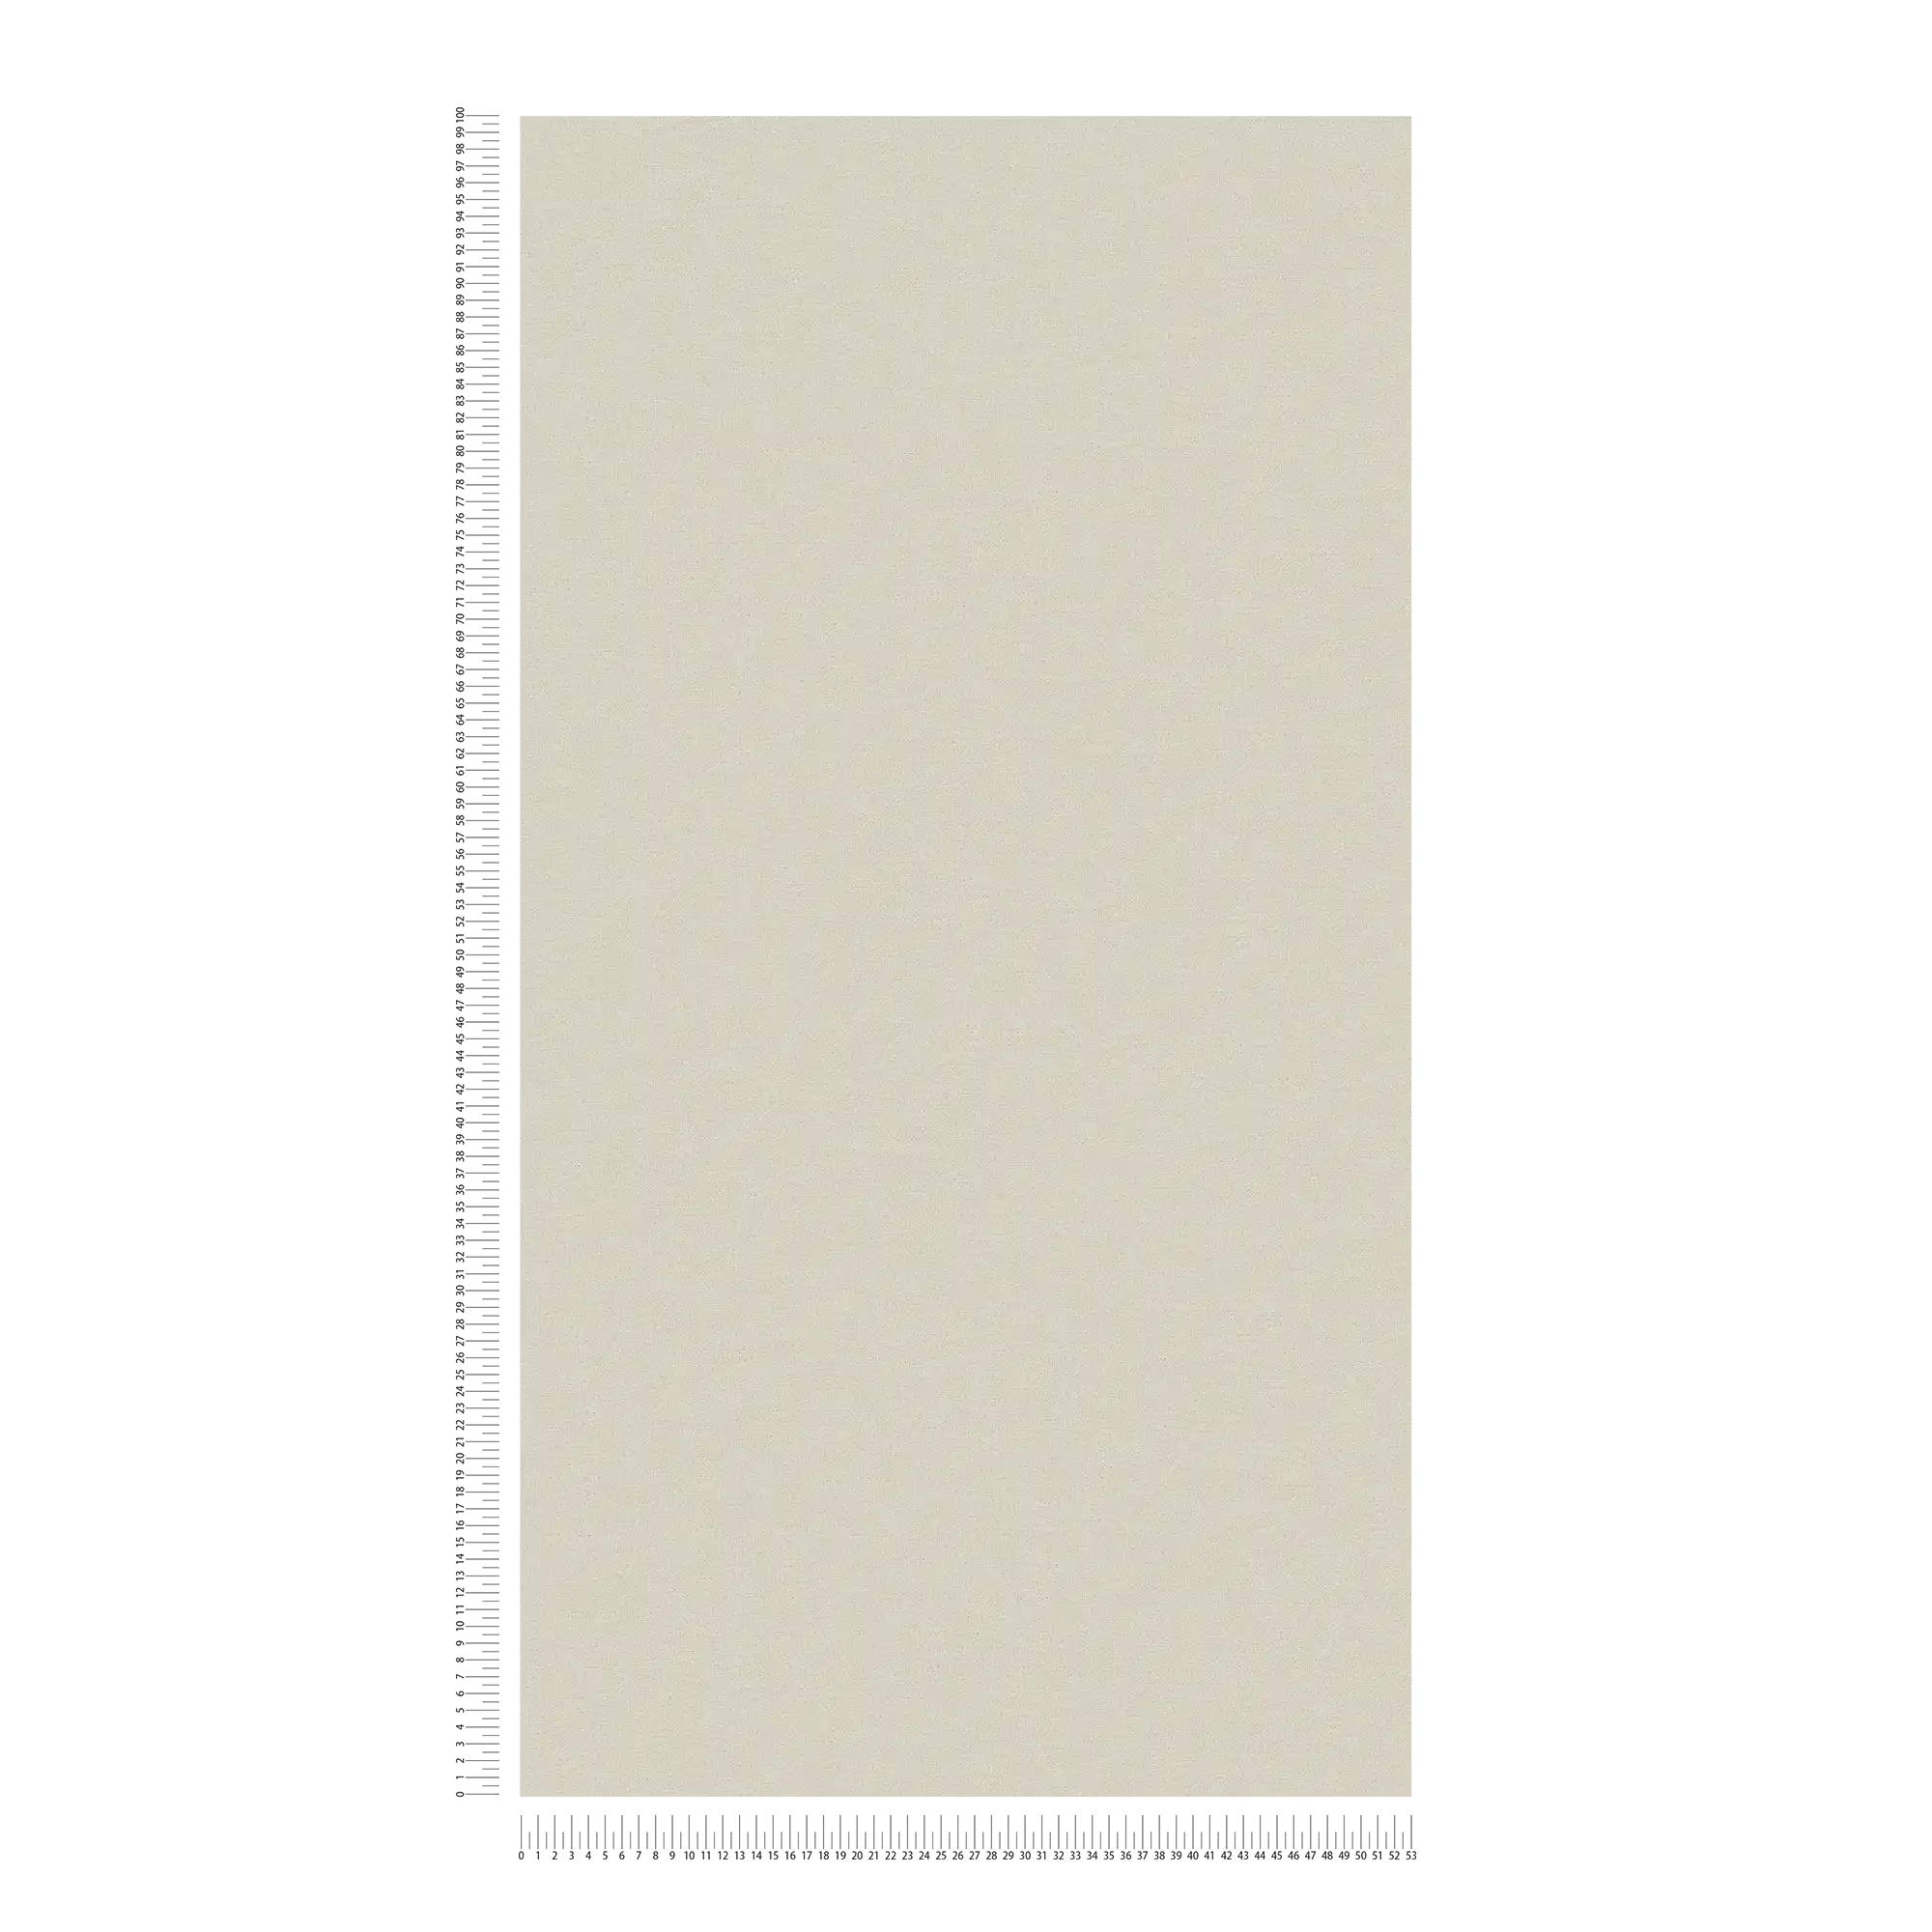             Papel pintado no tejido de MICHALSKY liso, mate en color crema
        